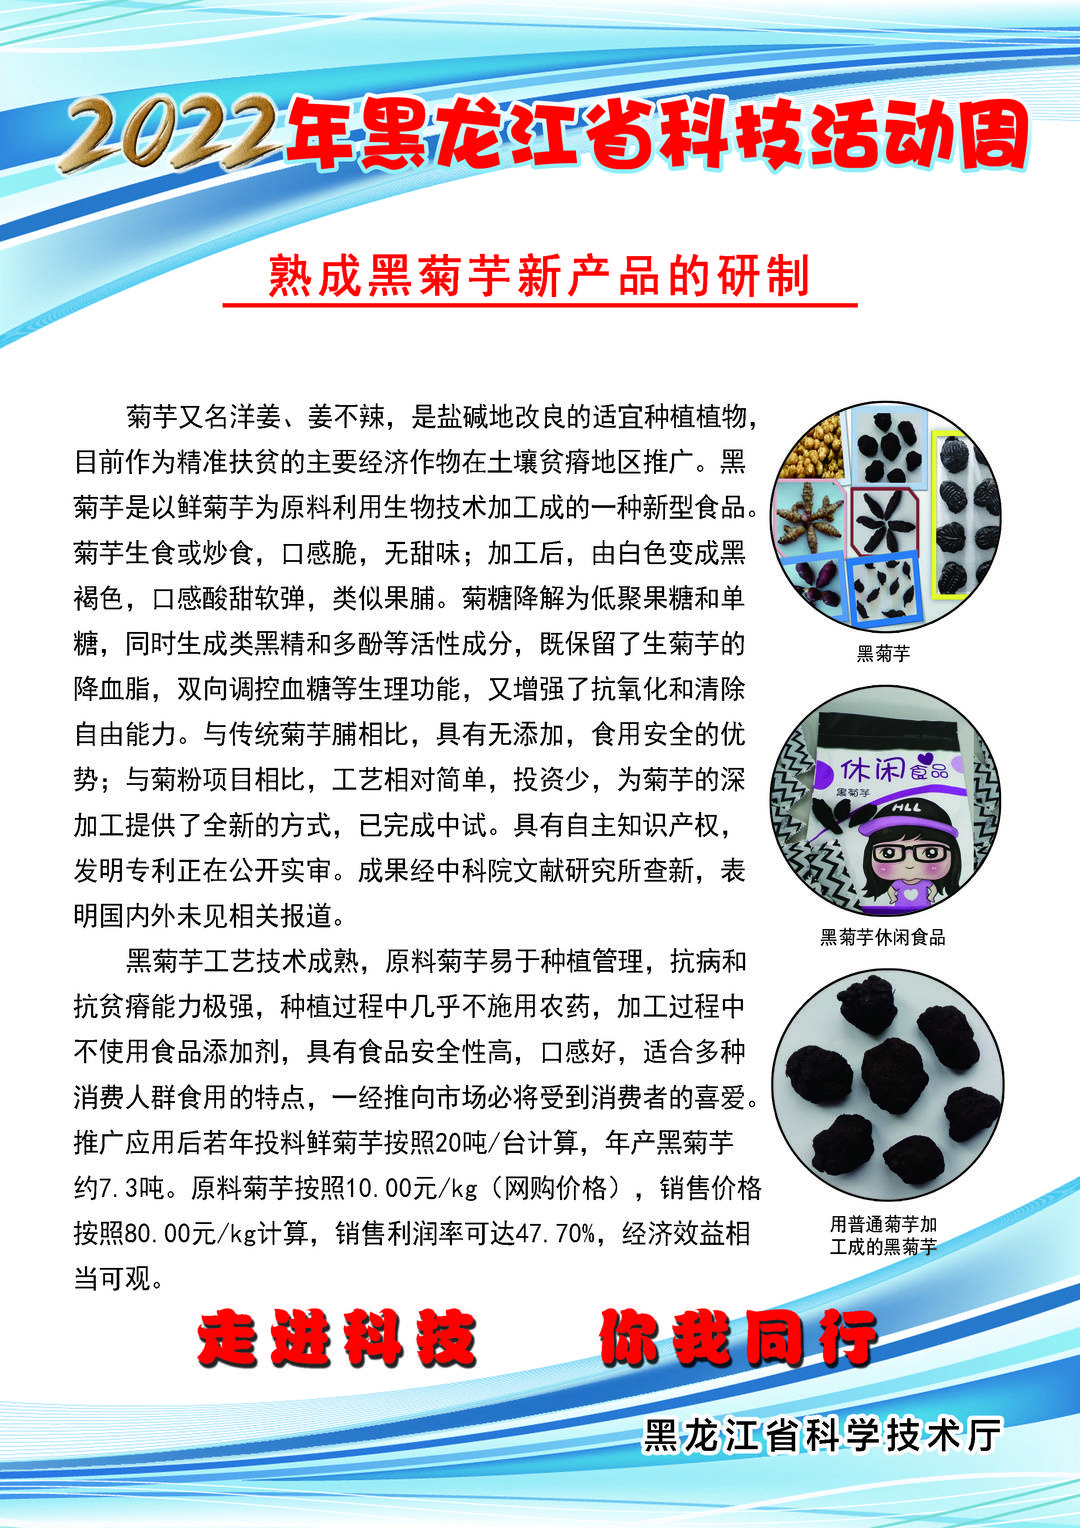 黑龙江省科技创新成果展丨熟成黑菊芋新产品的研制